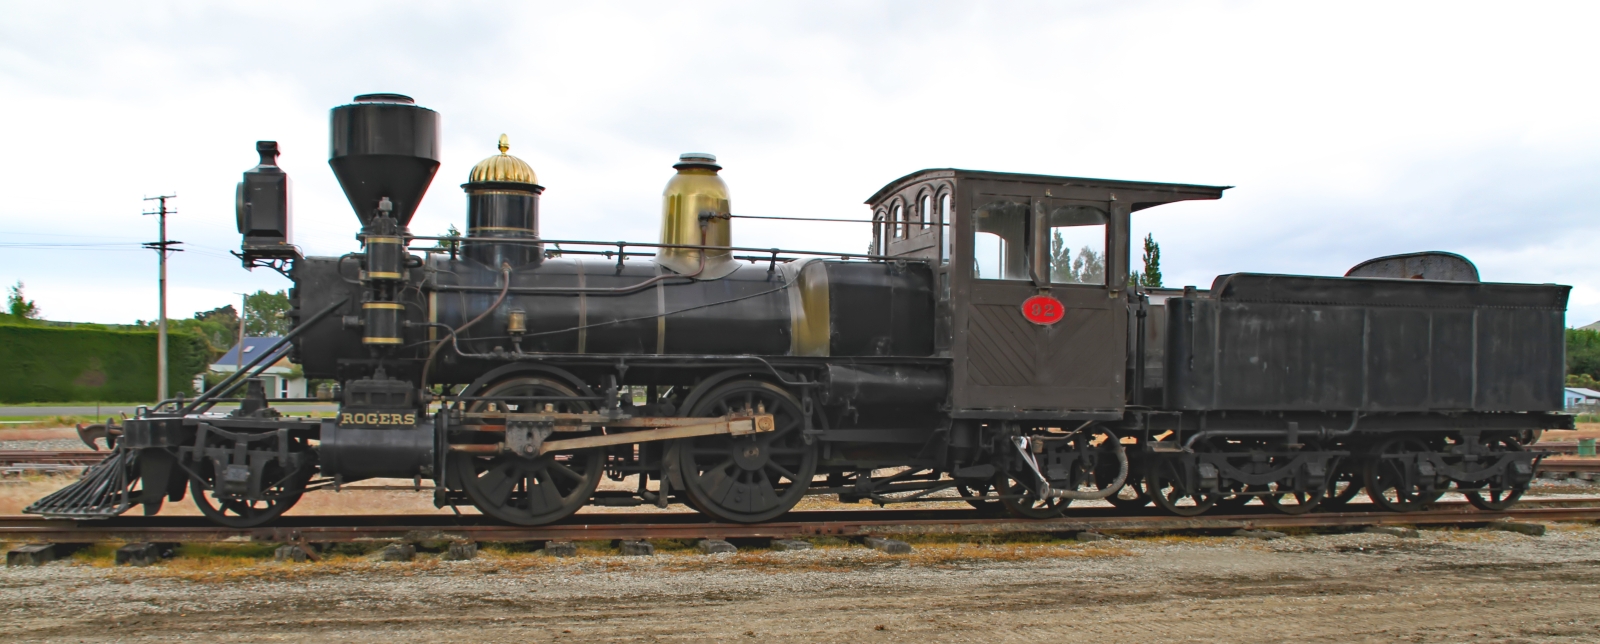 The preserved K 92 in November 2016